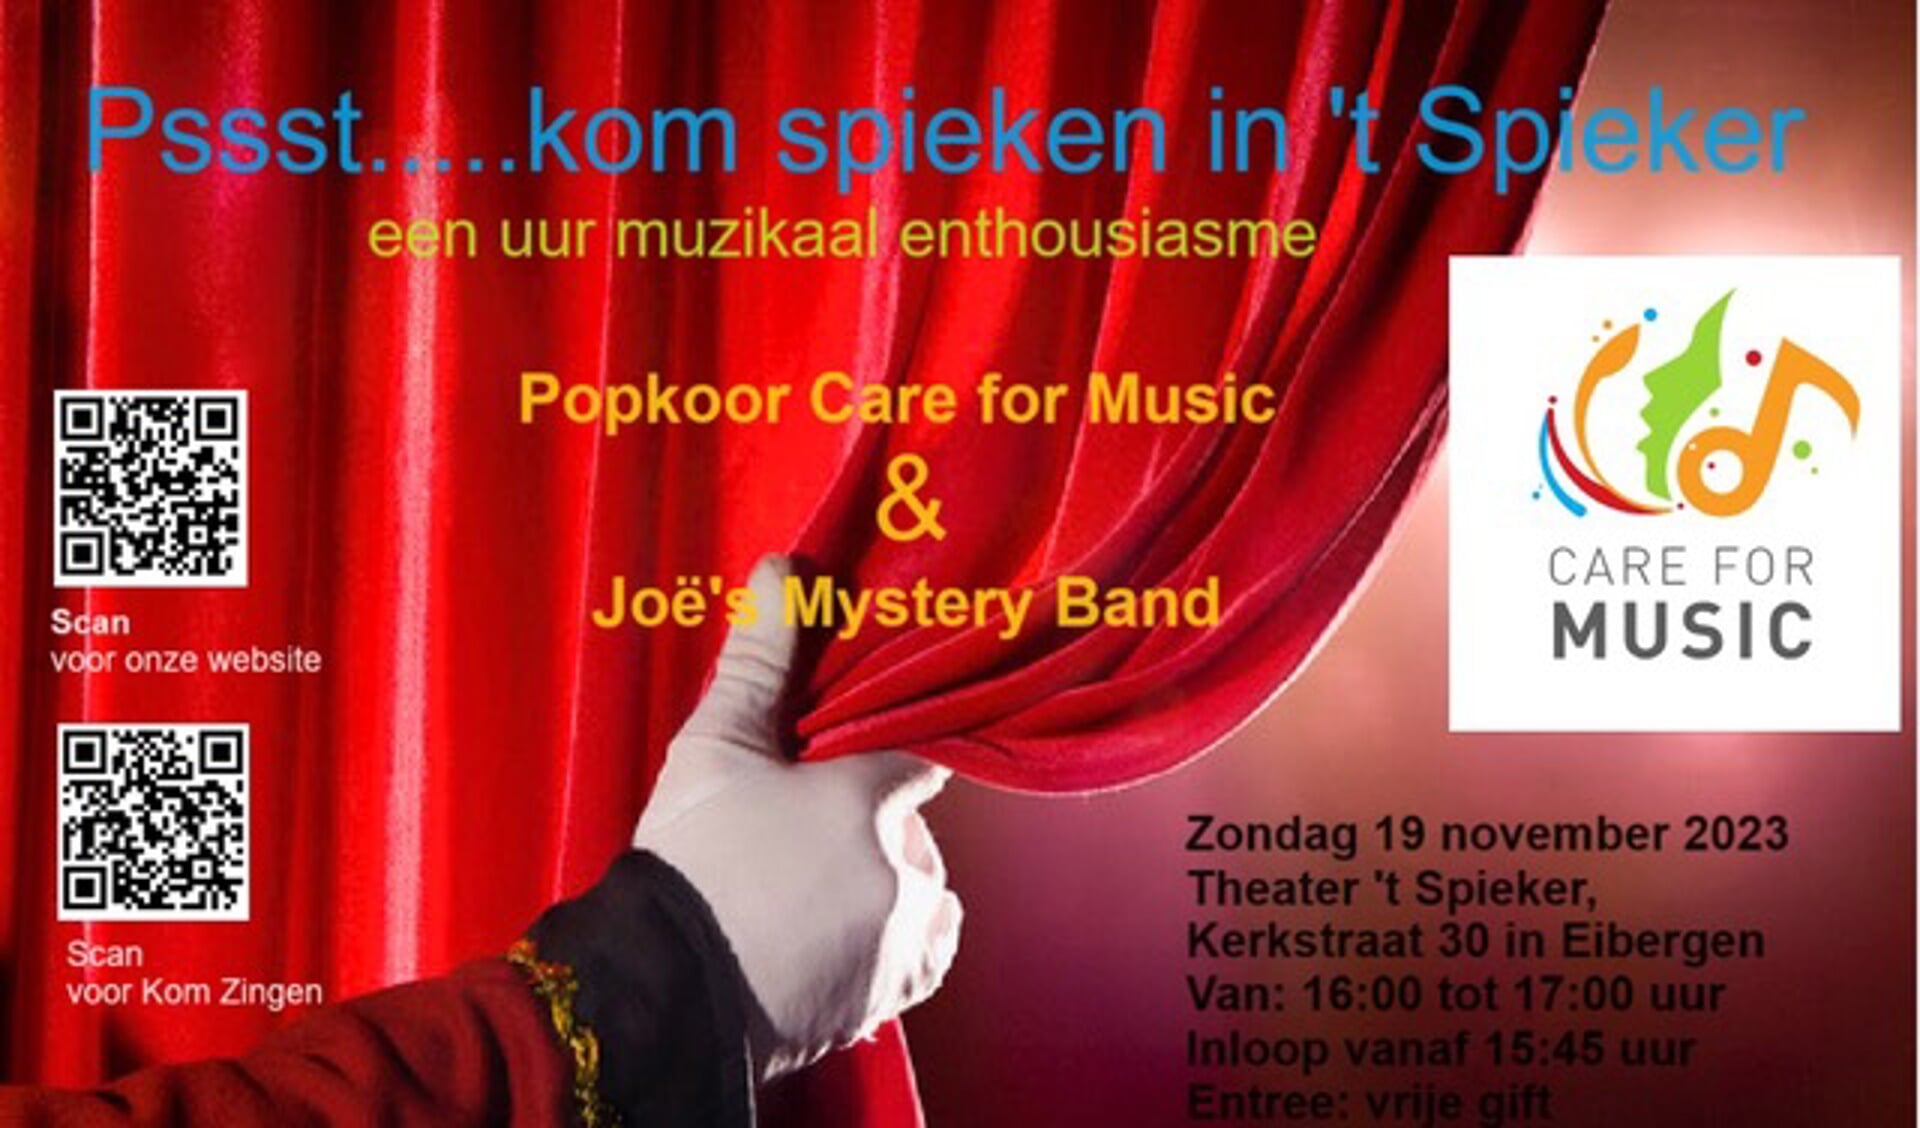 Care fot Music en Joë's Mystery Band treden op in Theater 't Spieker. 